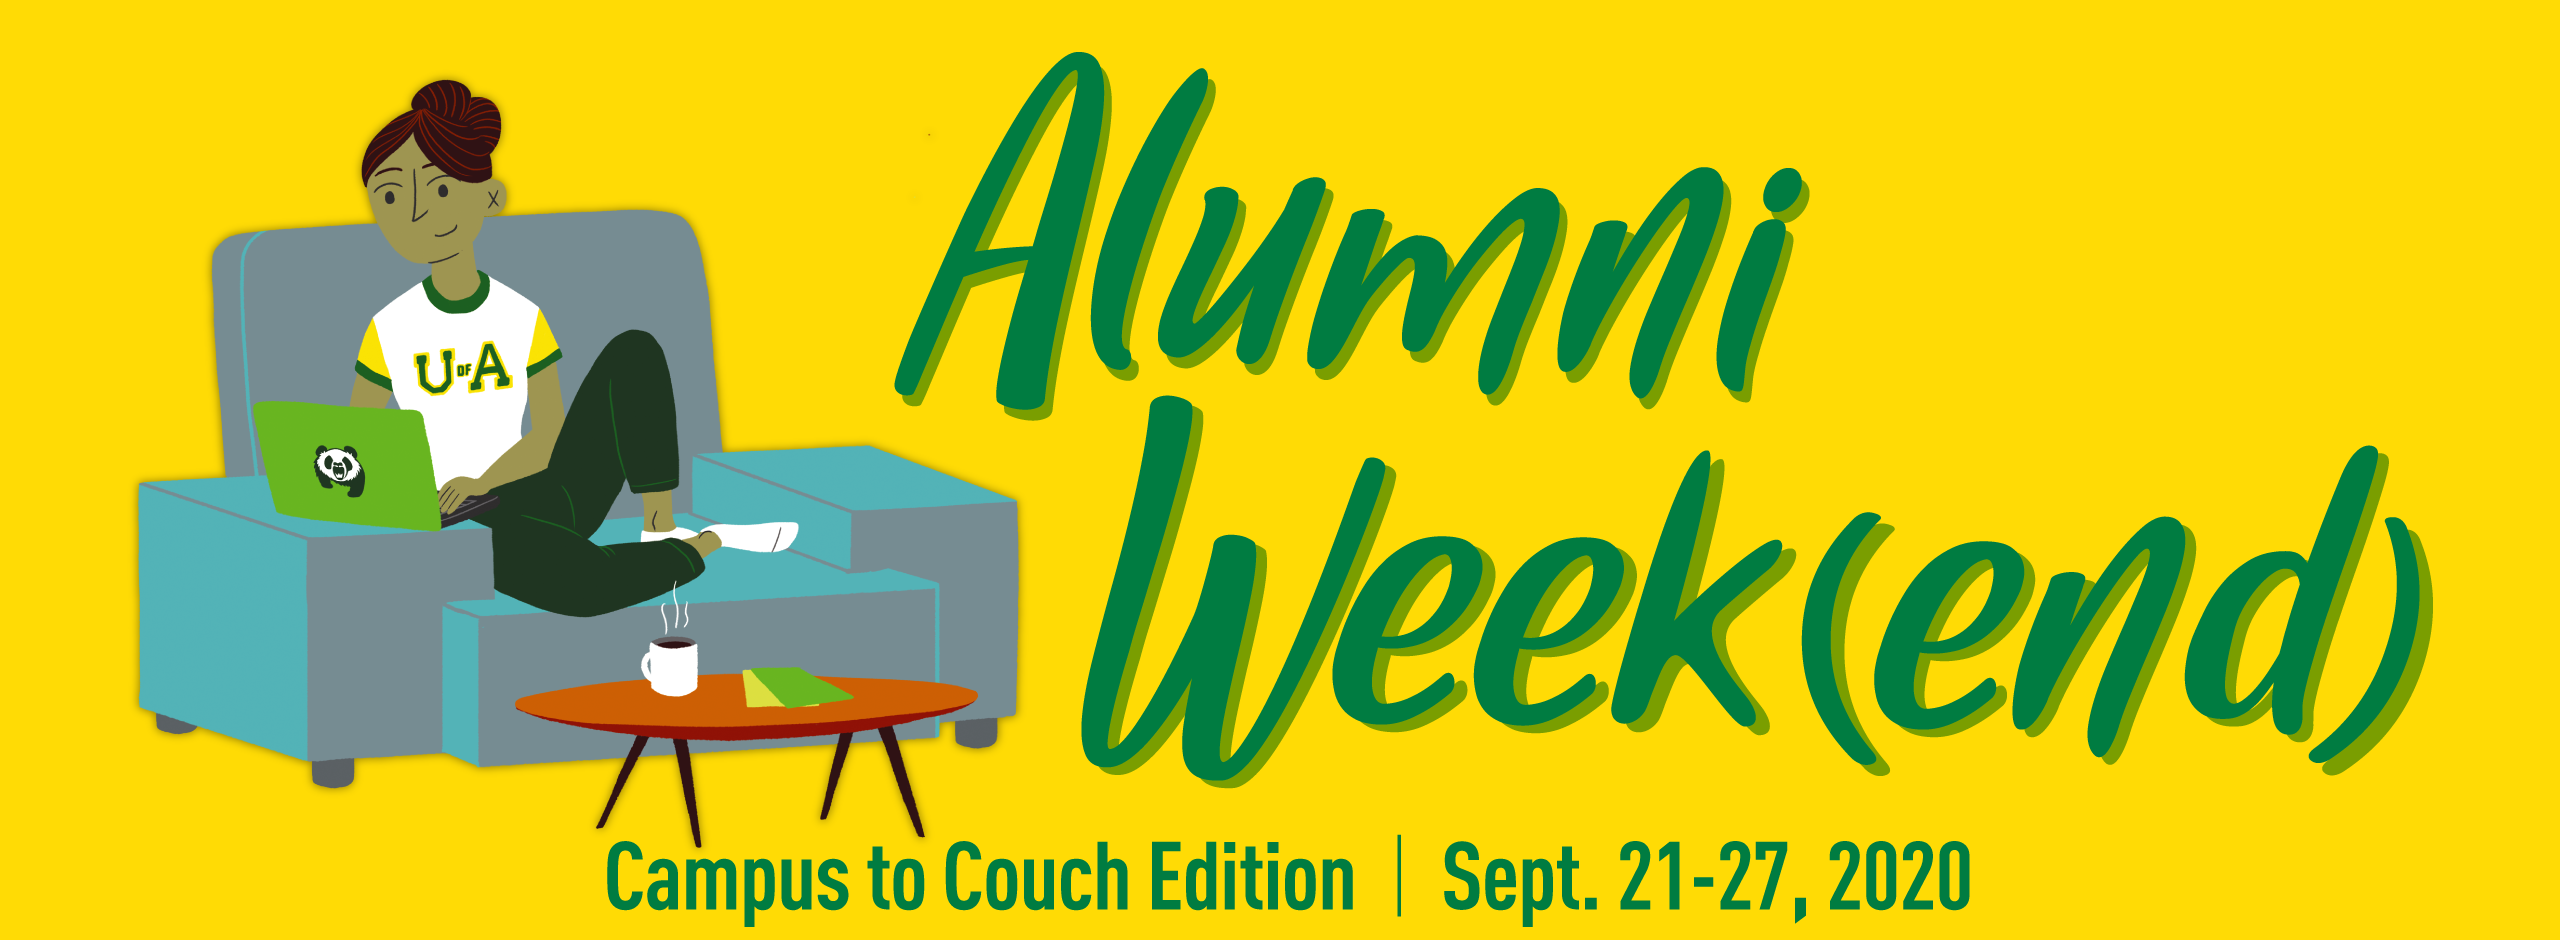 Alumni Weekend image and dates